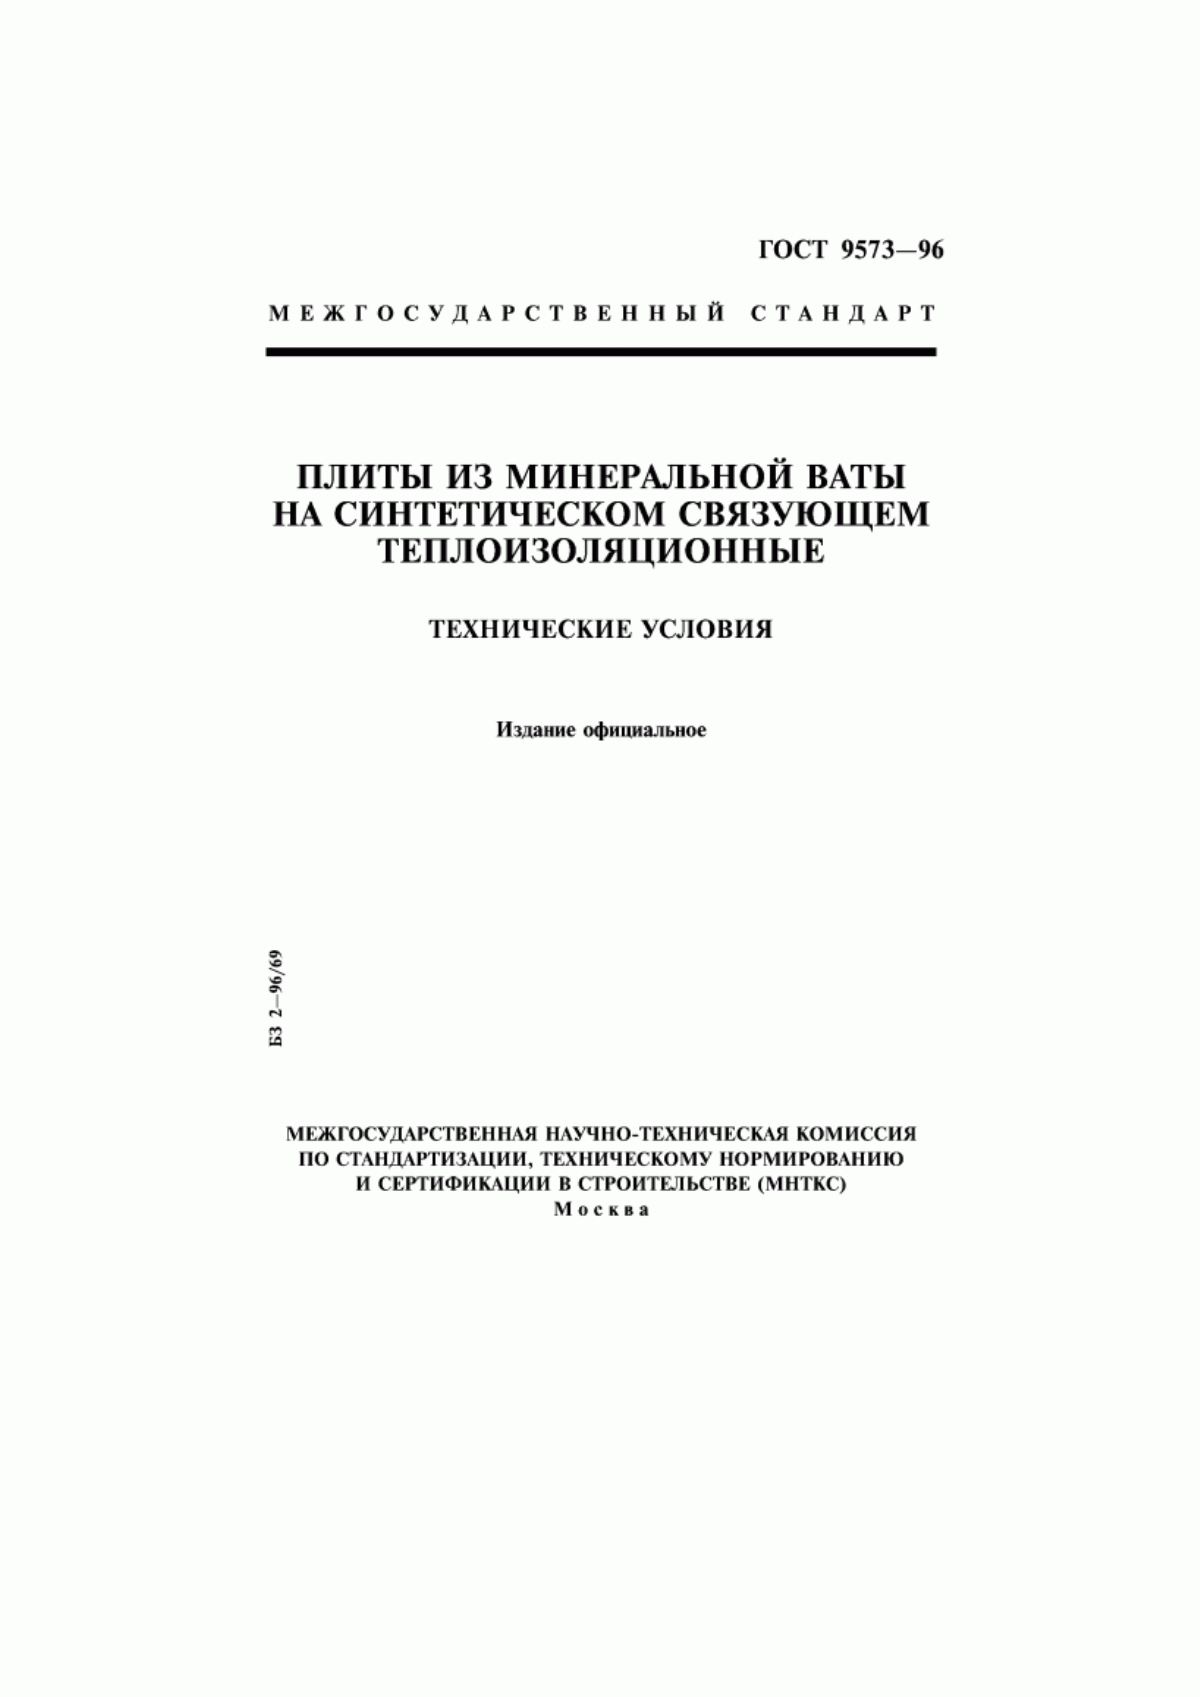 Перлитоцементные плиты ПЦП по ГОСТу 18109-80